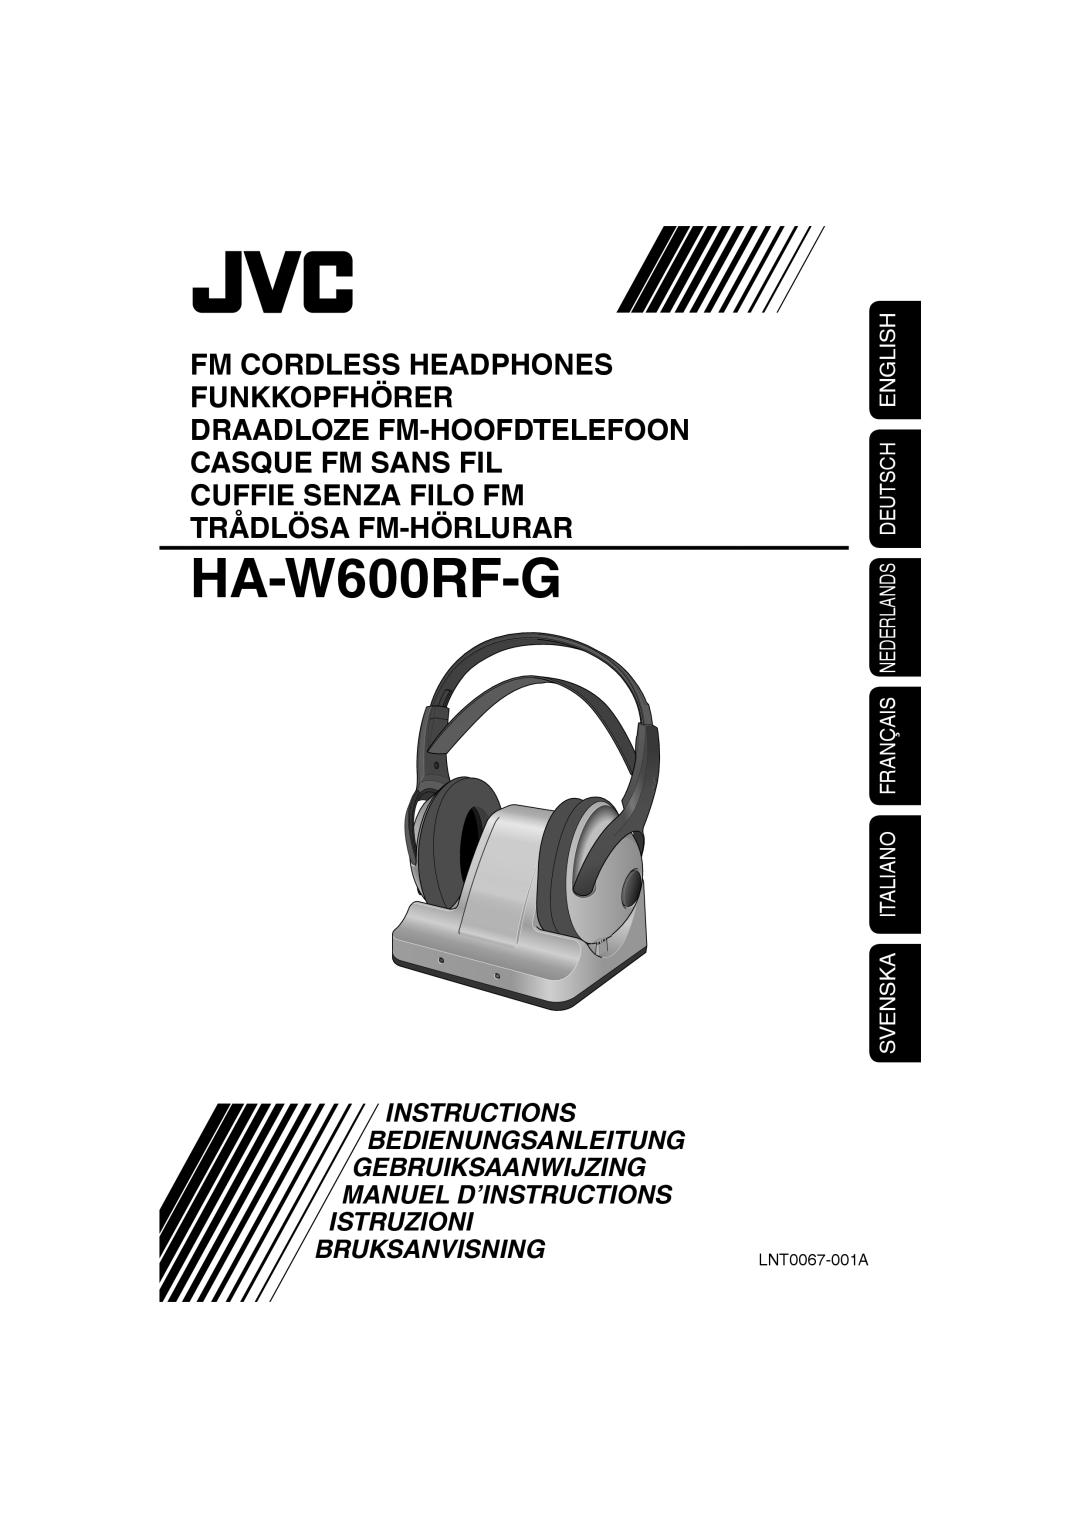 JVC HAW600RF manual HA-W600RF-G, Cuffie Senza Filo Fm Trådlösa Fm-Hörlurar, Instructions Bedienungsanleitung 